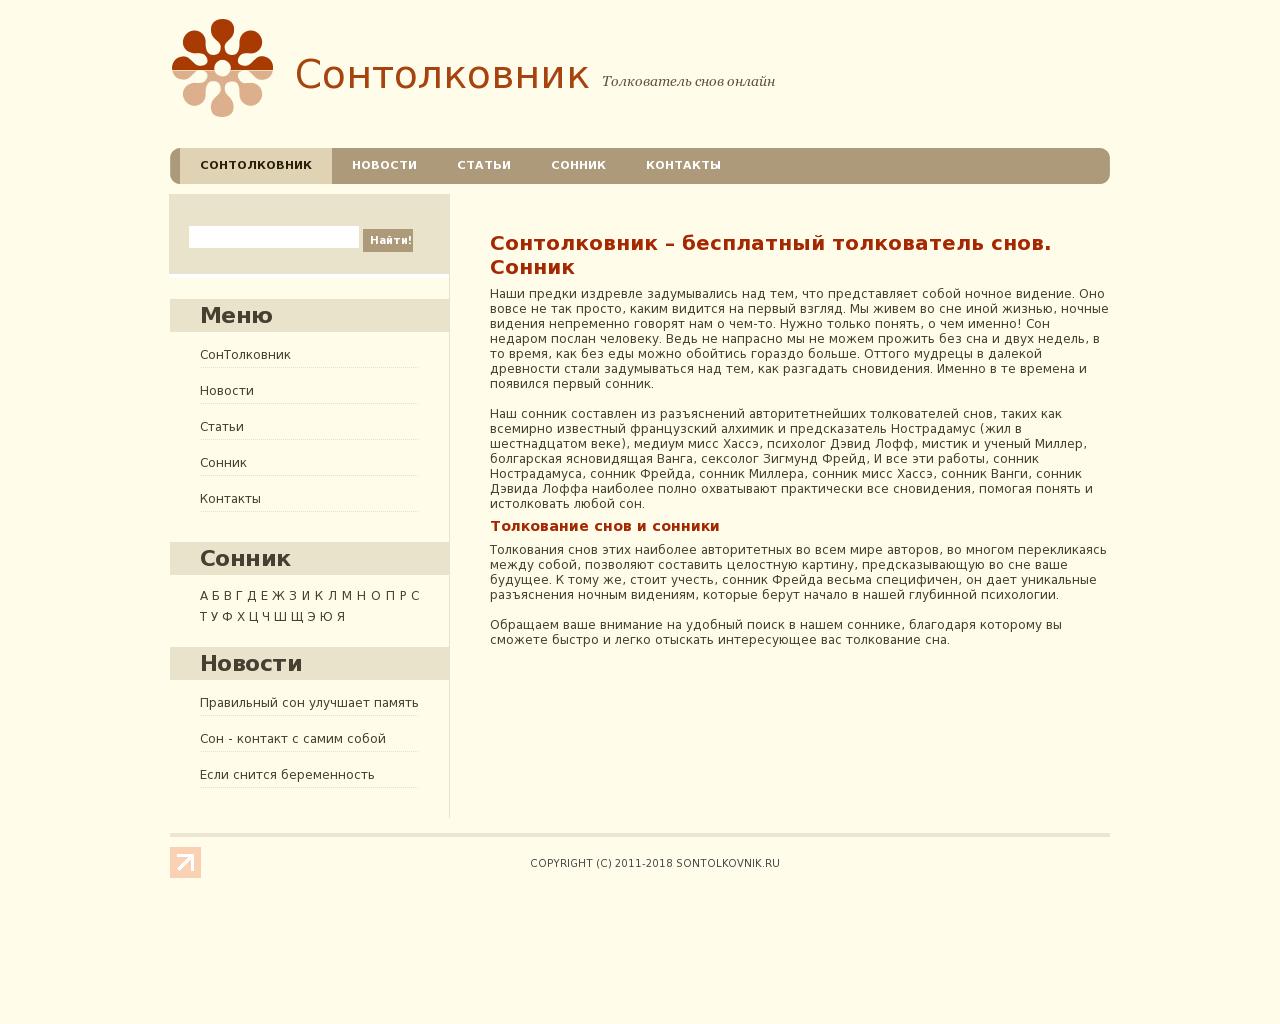 Изображение сайта sontolkovnik.ru в разрешении 1280x1024